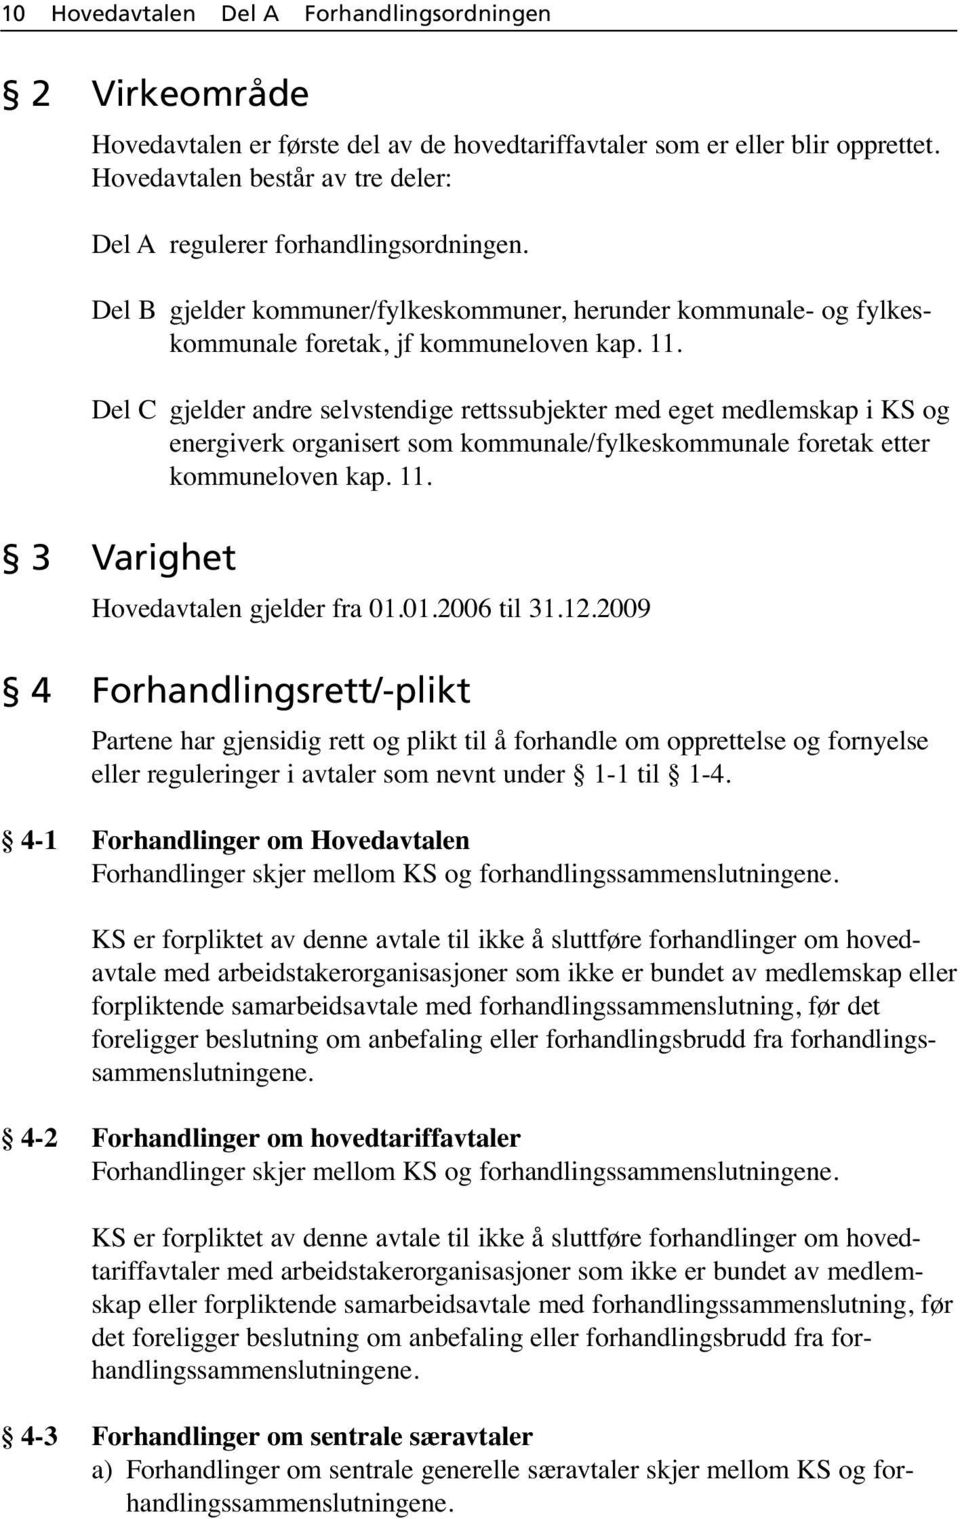 Del C gjelder andre selvstendige rettssubjekter med eget medlemskap i KS og energiverk organisert som kommunale/fylkeskommunale foretak etter kommuneloven kap. 11.